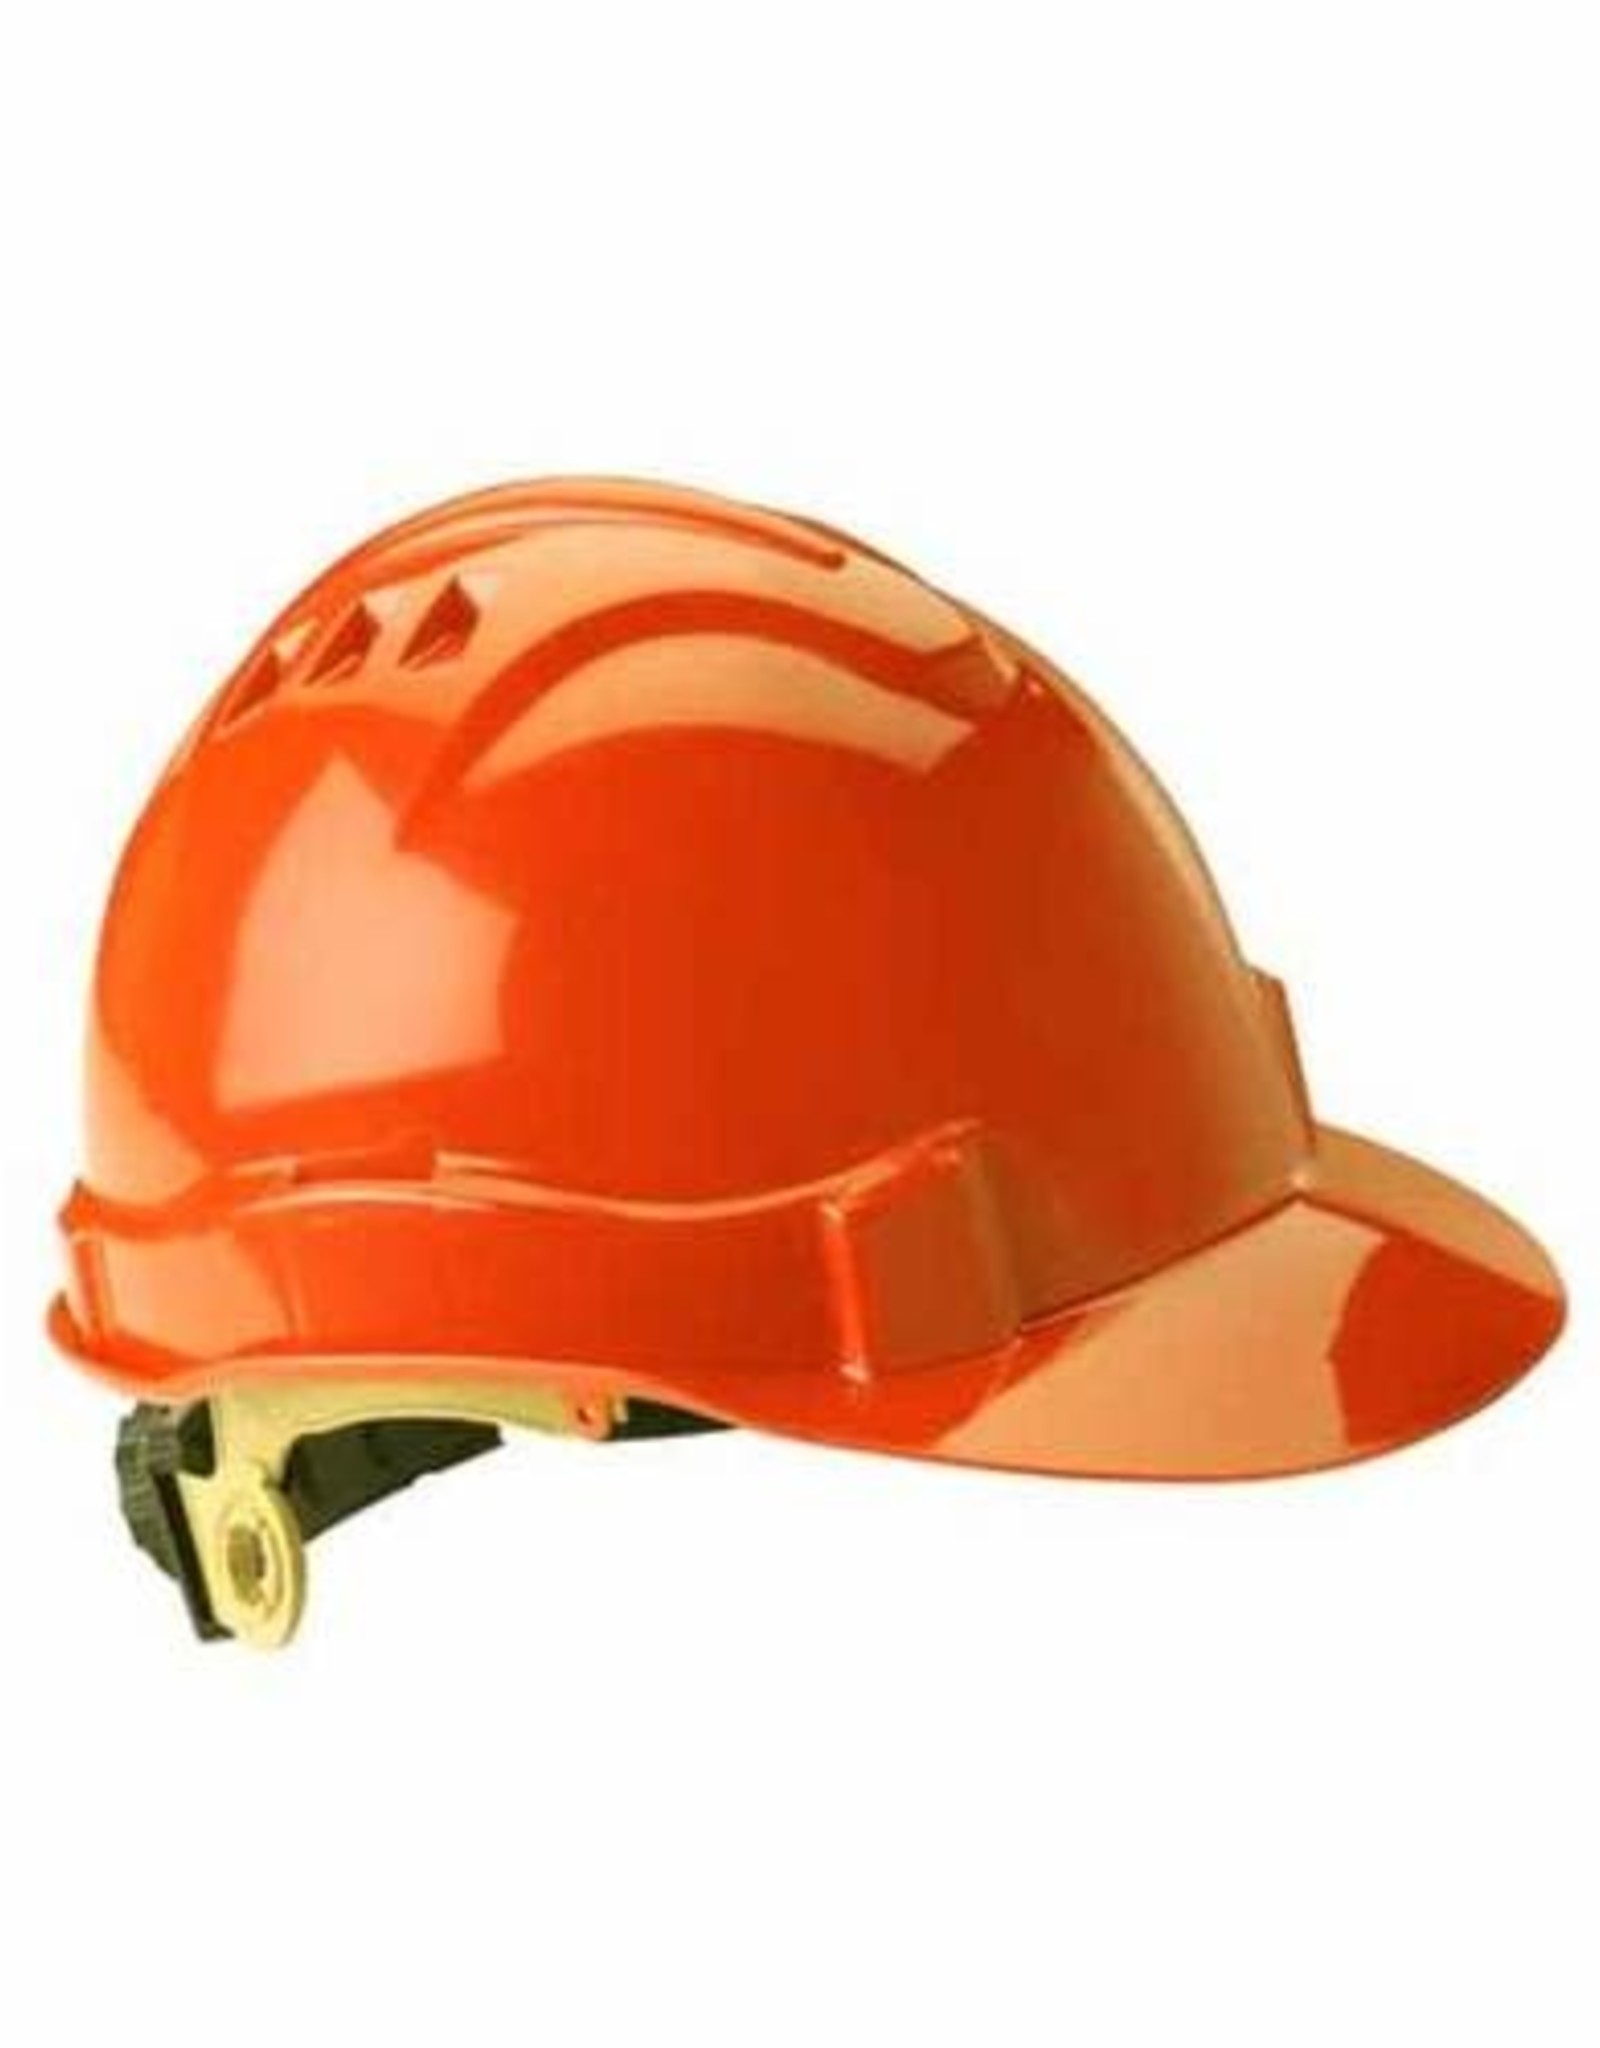 Gateway Safety Standard Hi-Viz Orange Shell Ratchet Adjustment Suspension Hard Hat  - 10 Pack